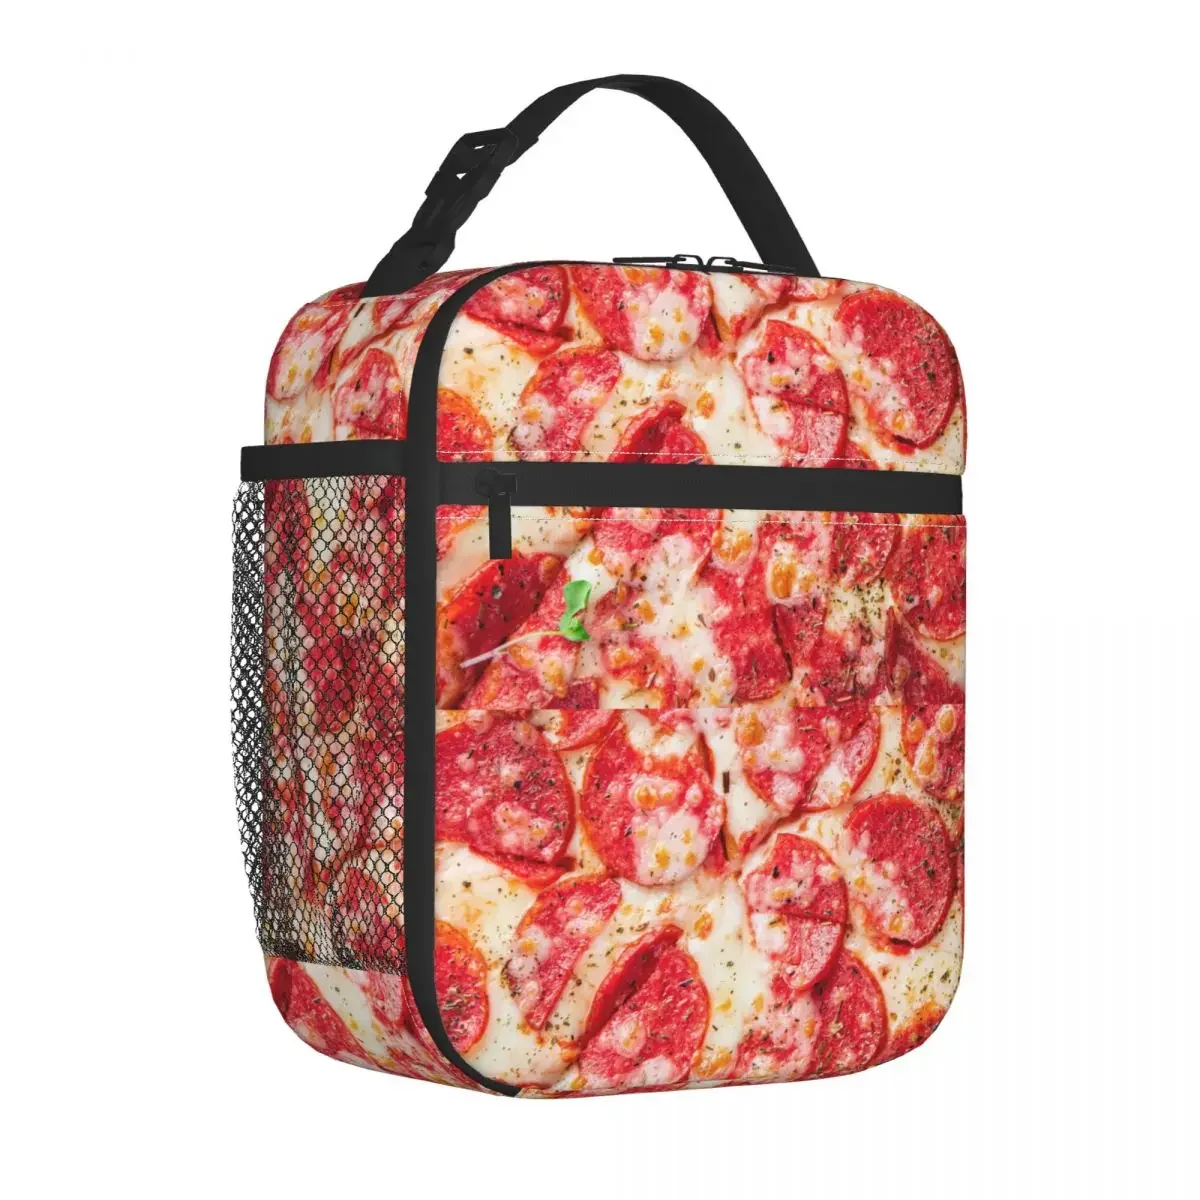 

Изолированная сумка для пиццы, салями, сосисок, перец, пищевых продуктов, Термосумка, контейнер для ланча, тоут, коробка для ланча, школьные сумки для хранения еды